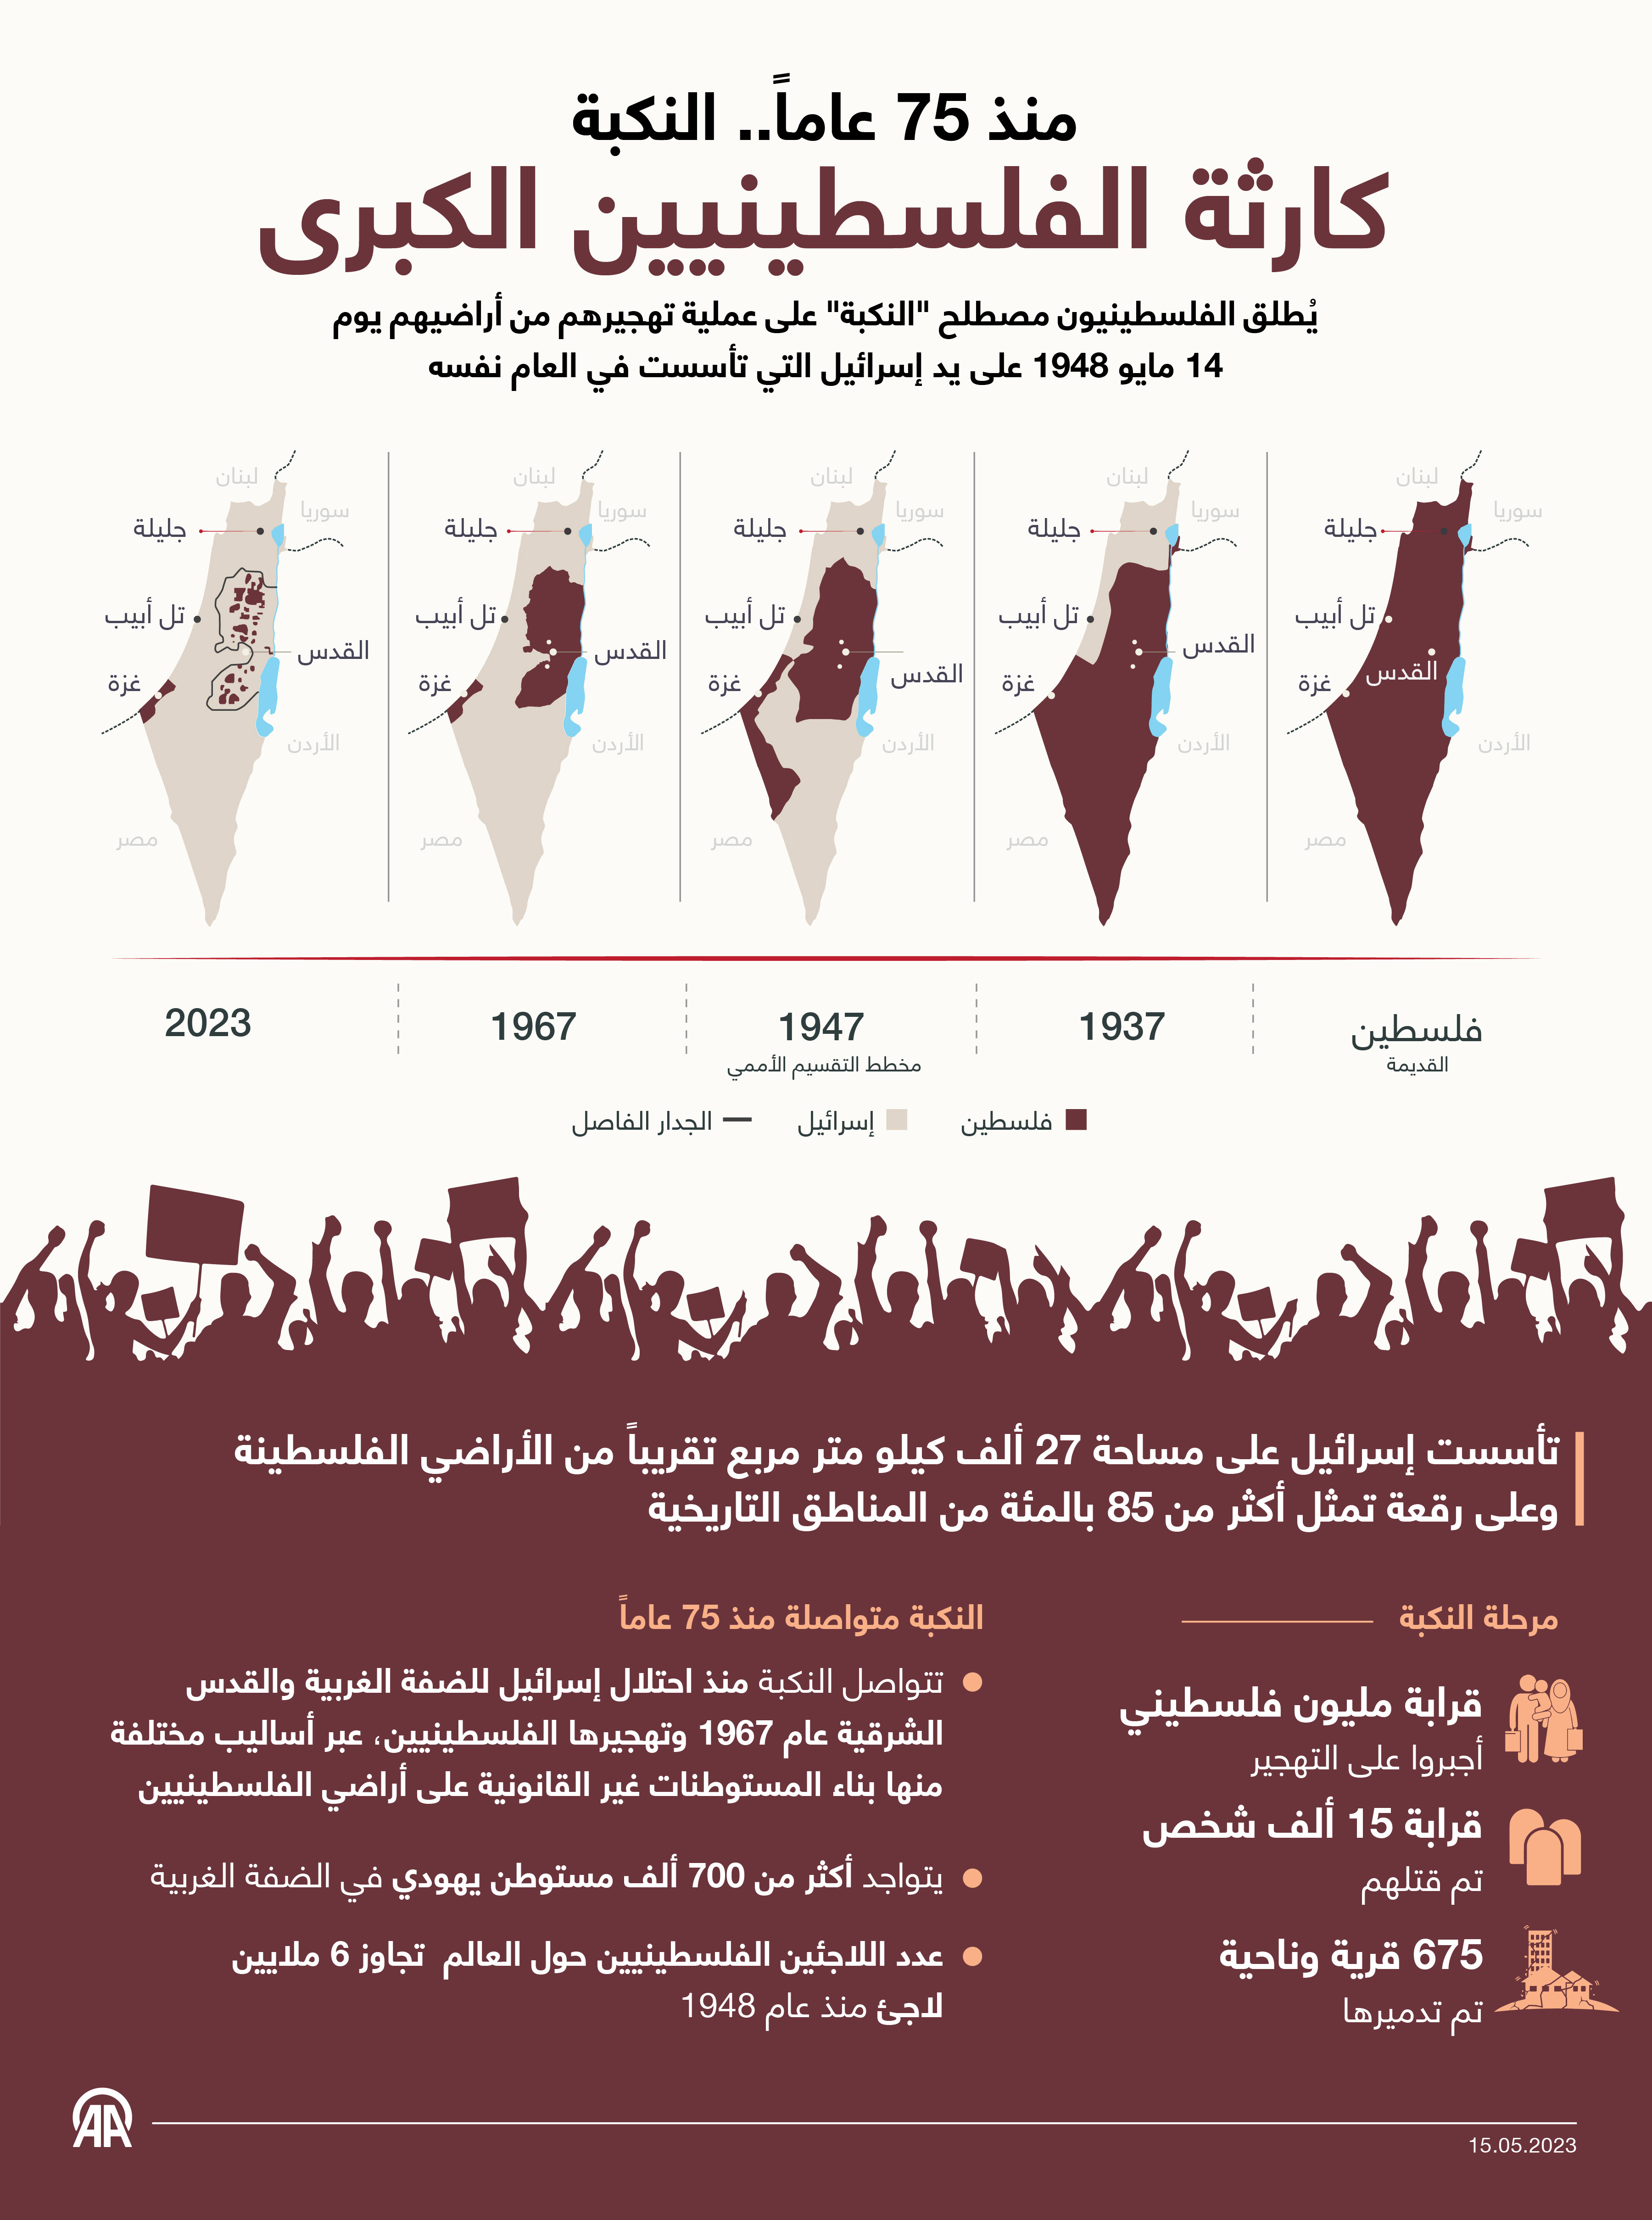 النكبة.. كارثة الفلسطينيين الكبرى منذ 75 عاماً